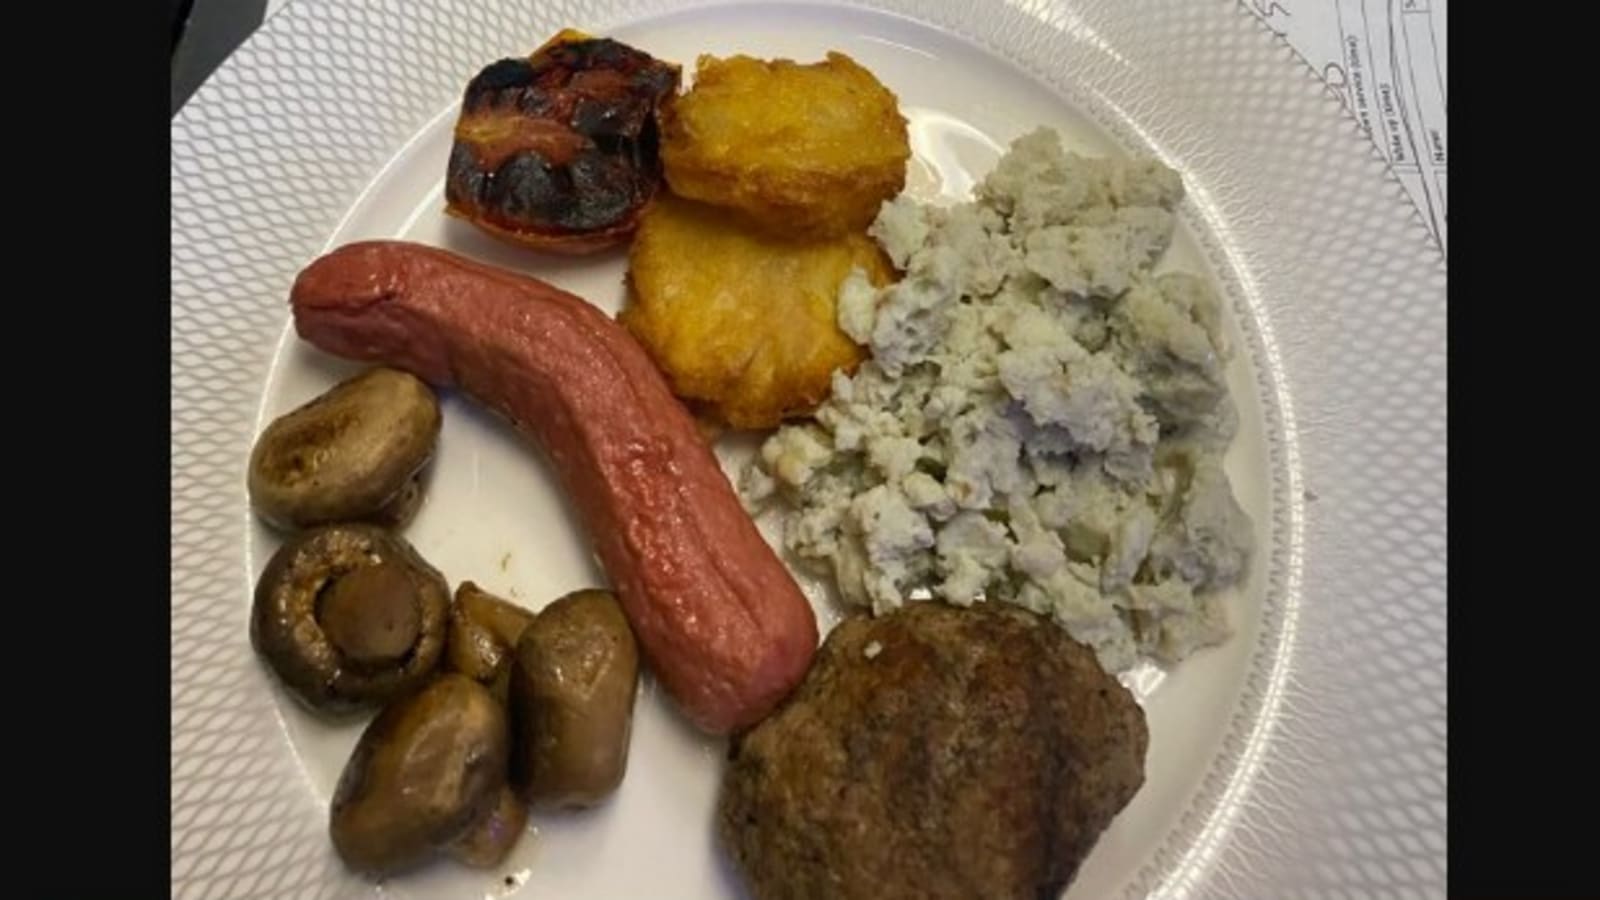 Mujer tuitea foto de comida en primera clase en vuelo de British Airways, Twitter reacciona |  Tendencia